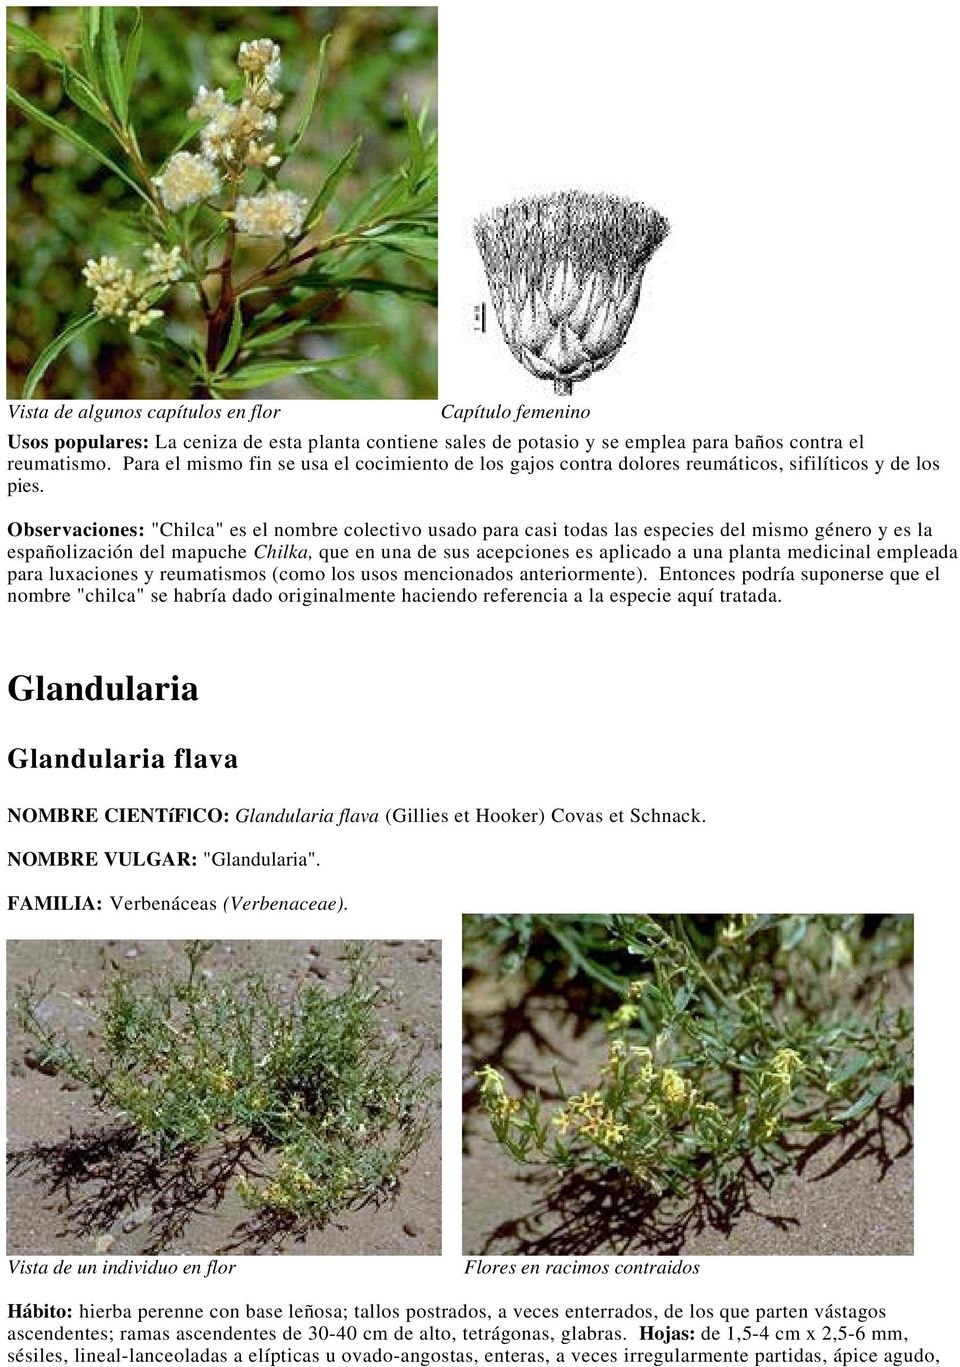 Observaciones: "Chilca" es el nombre colectivo usado para casi todas las especies del mismo género y es la españolización del mapuche Chilka, que en una de sus acepciones es aplicado a una planta